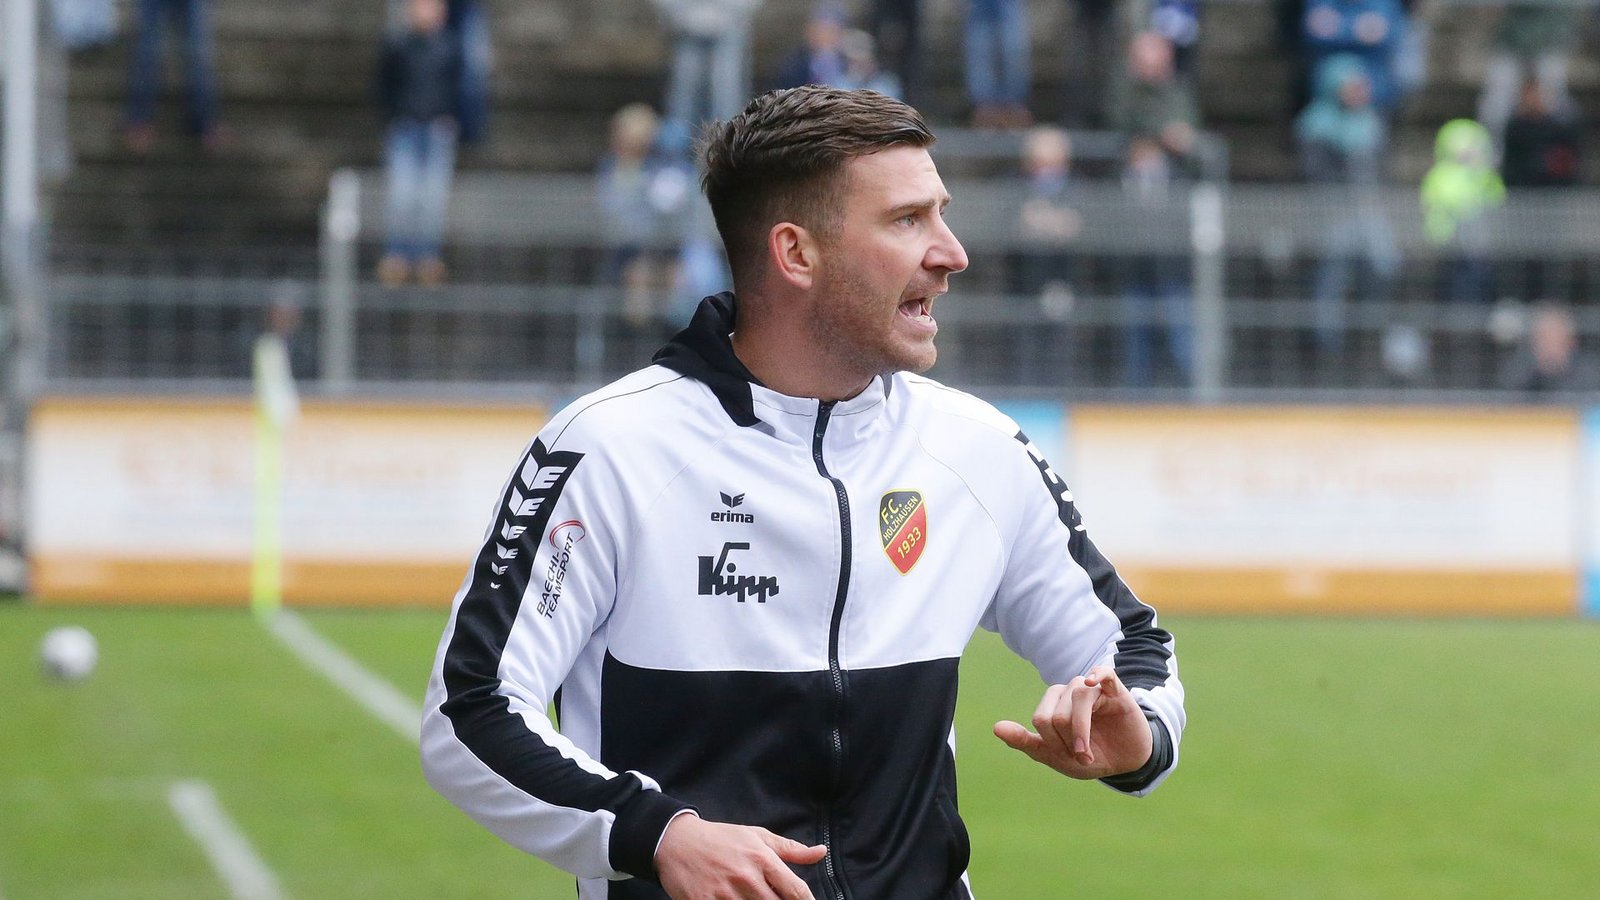 FCH-Coach Pascal Reinhardt stürmte in der Jugend für die Kickers.Foto: Pressefoto Baumann/Hansjürgen Britsch